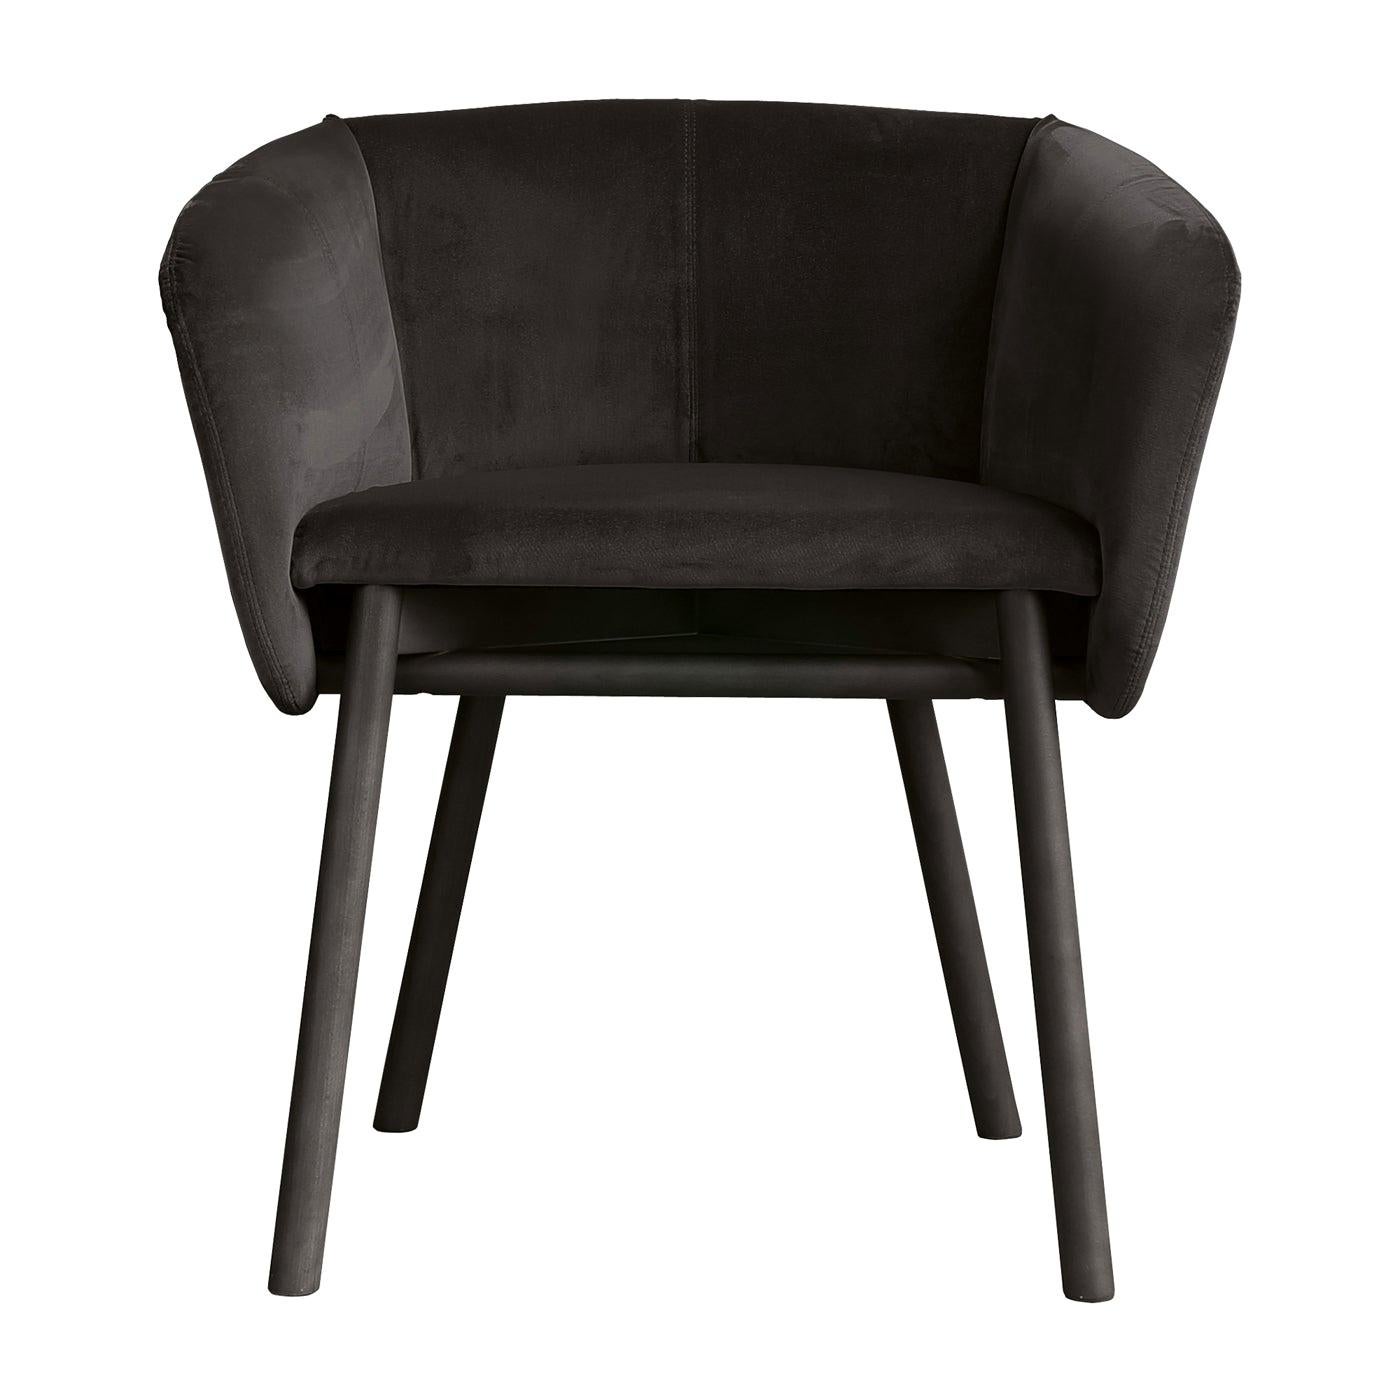 Balù Black Chair by Emilio Nanni